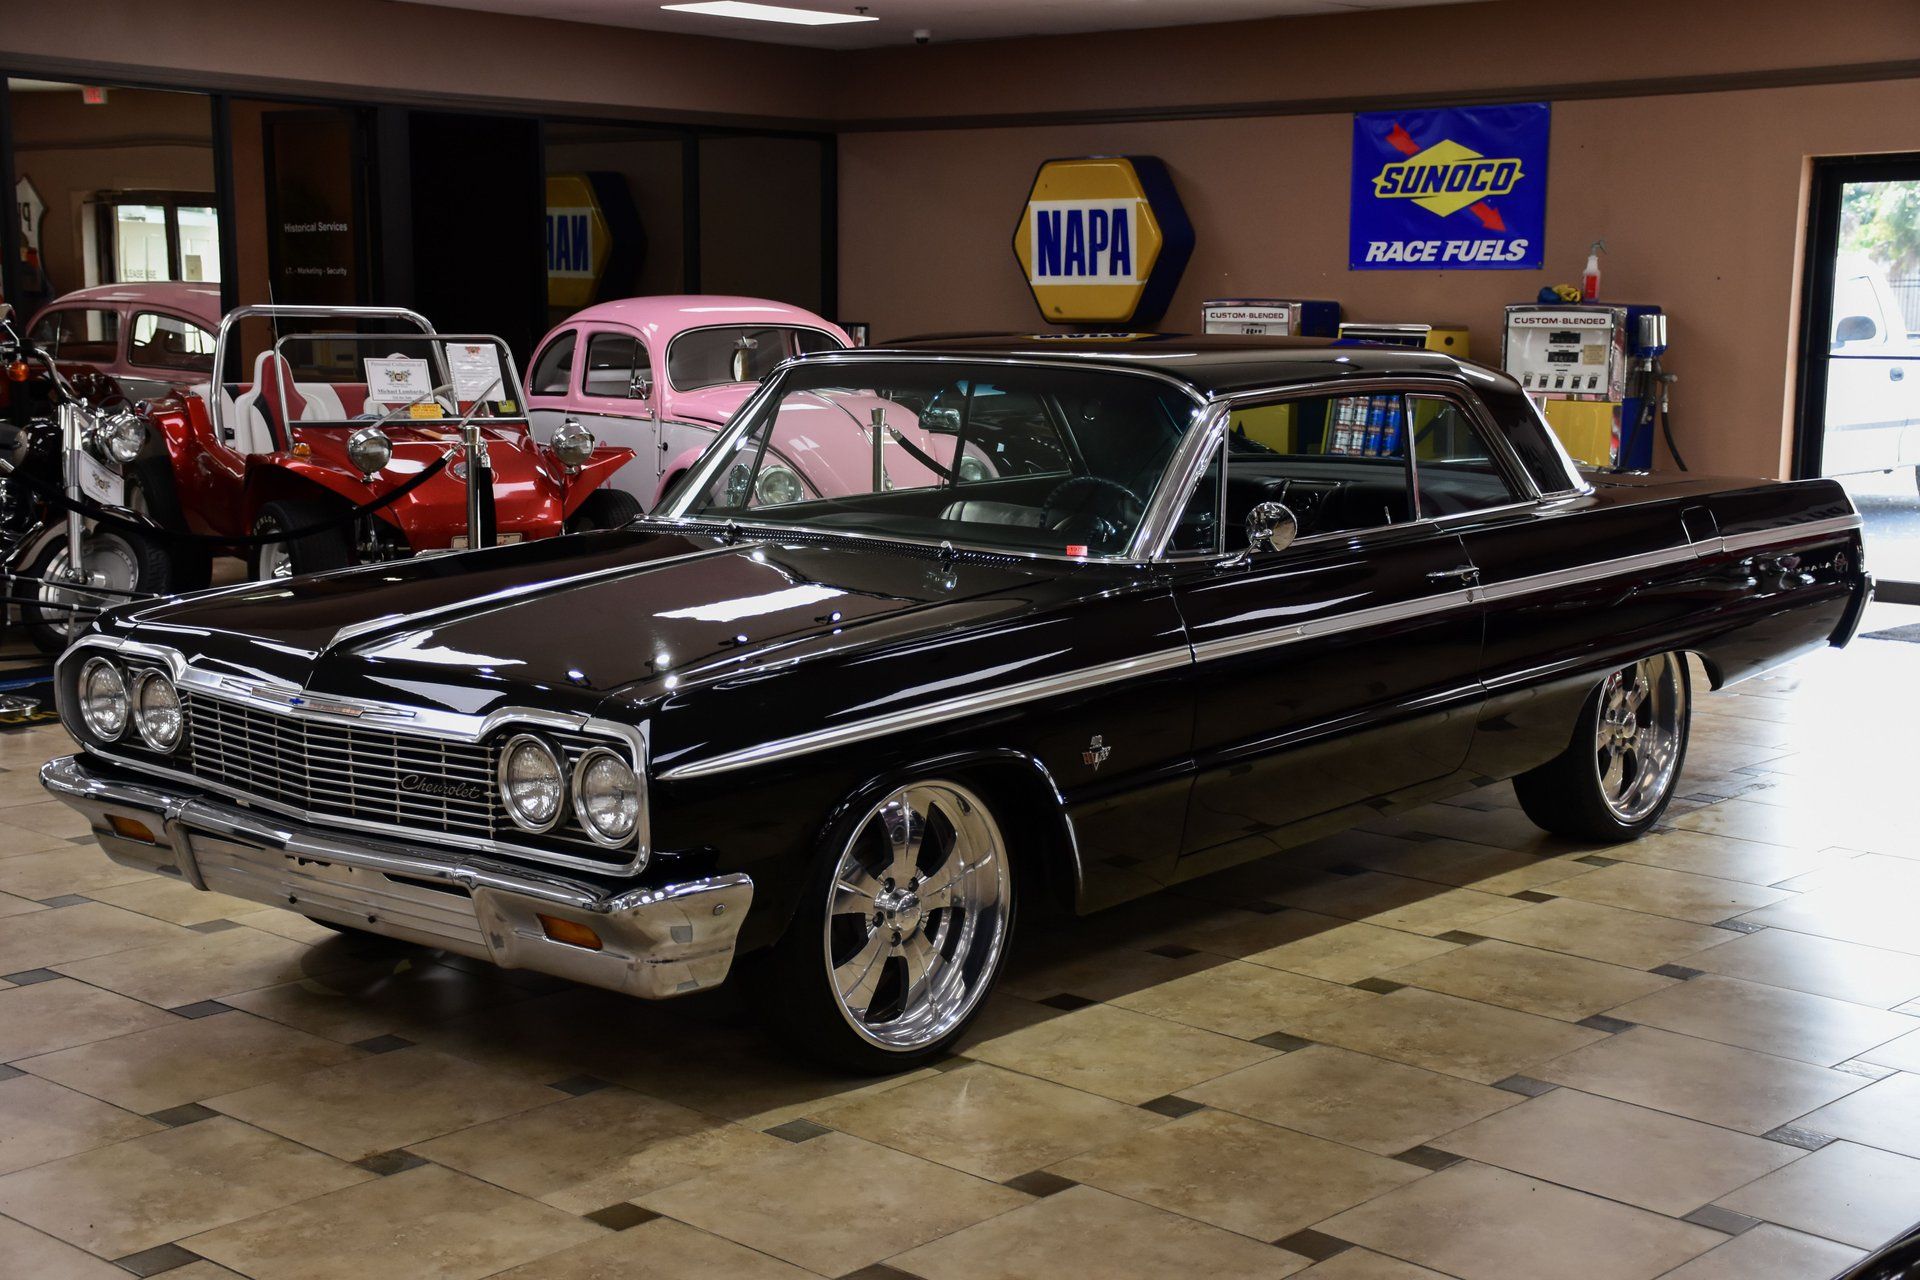 <img src="1964-impala.jpeg" alt="A 1964 Chevrolet Impala 409 built into a 482 stroker">